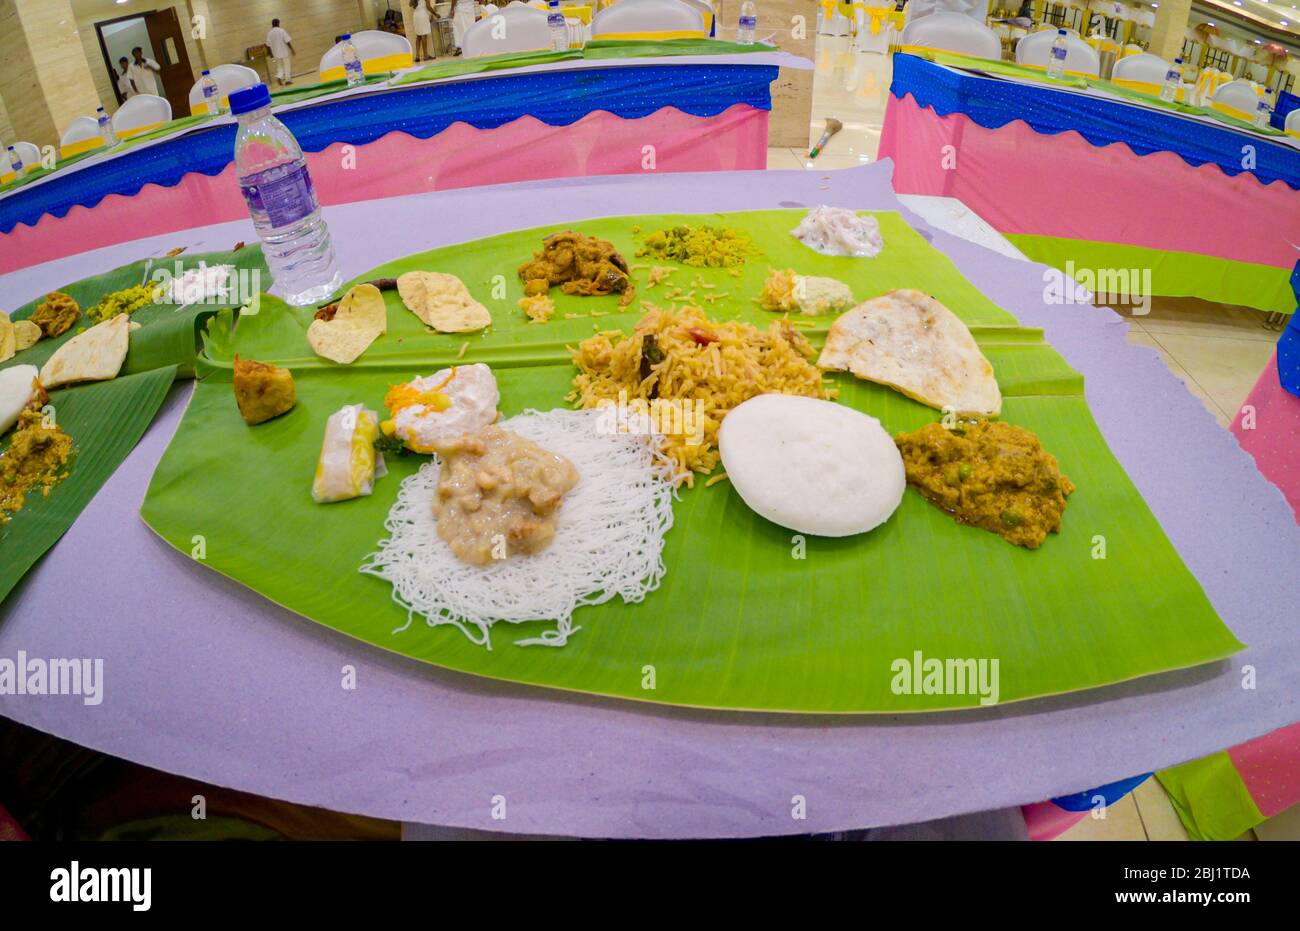 La nourriture est servie sur une feuille de banane lors d'un mariage sud-indien Banque D'Images